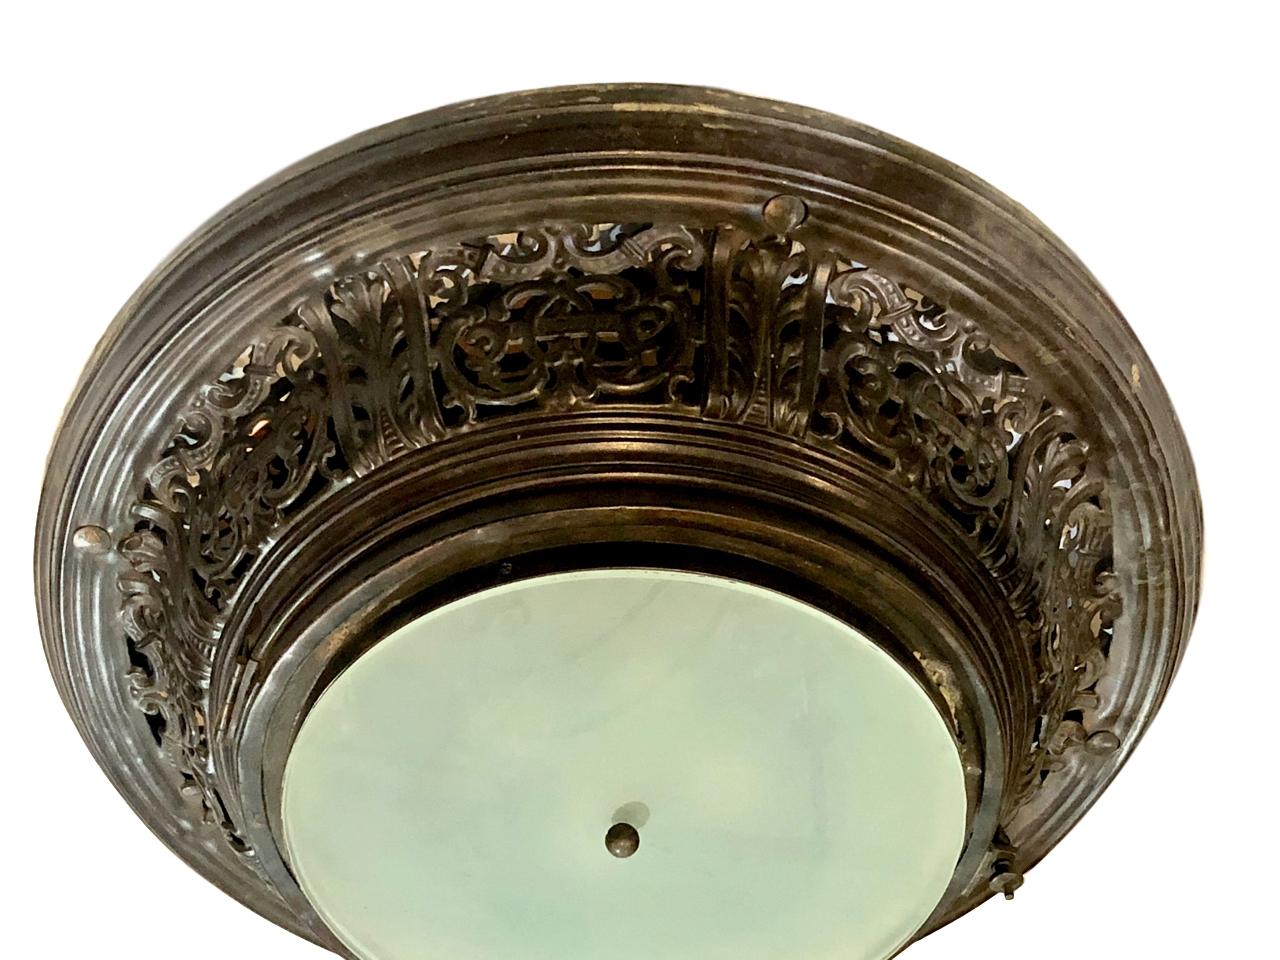 Um 1910 französische halbbündige Leuchte aus antiker Bronze mit Milchglaseinsatz.

Abmessungen:
Durchmesser 27